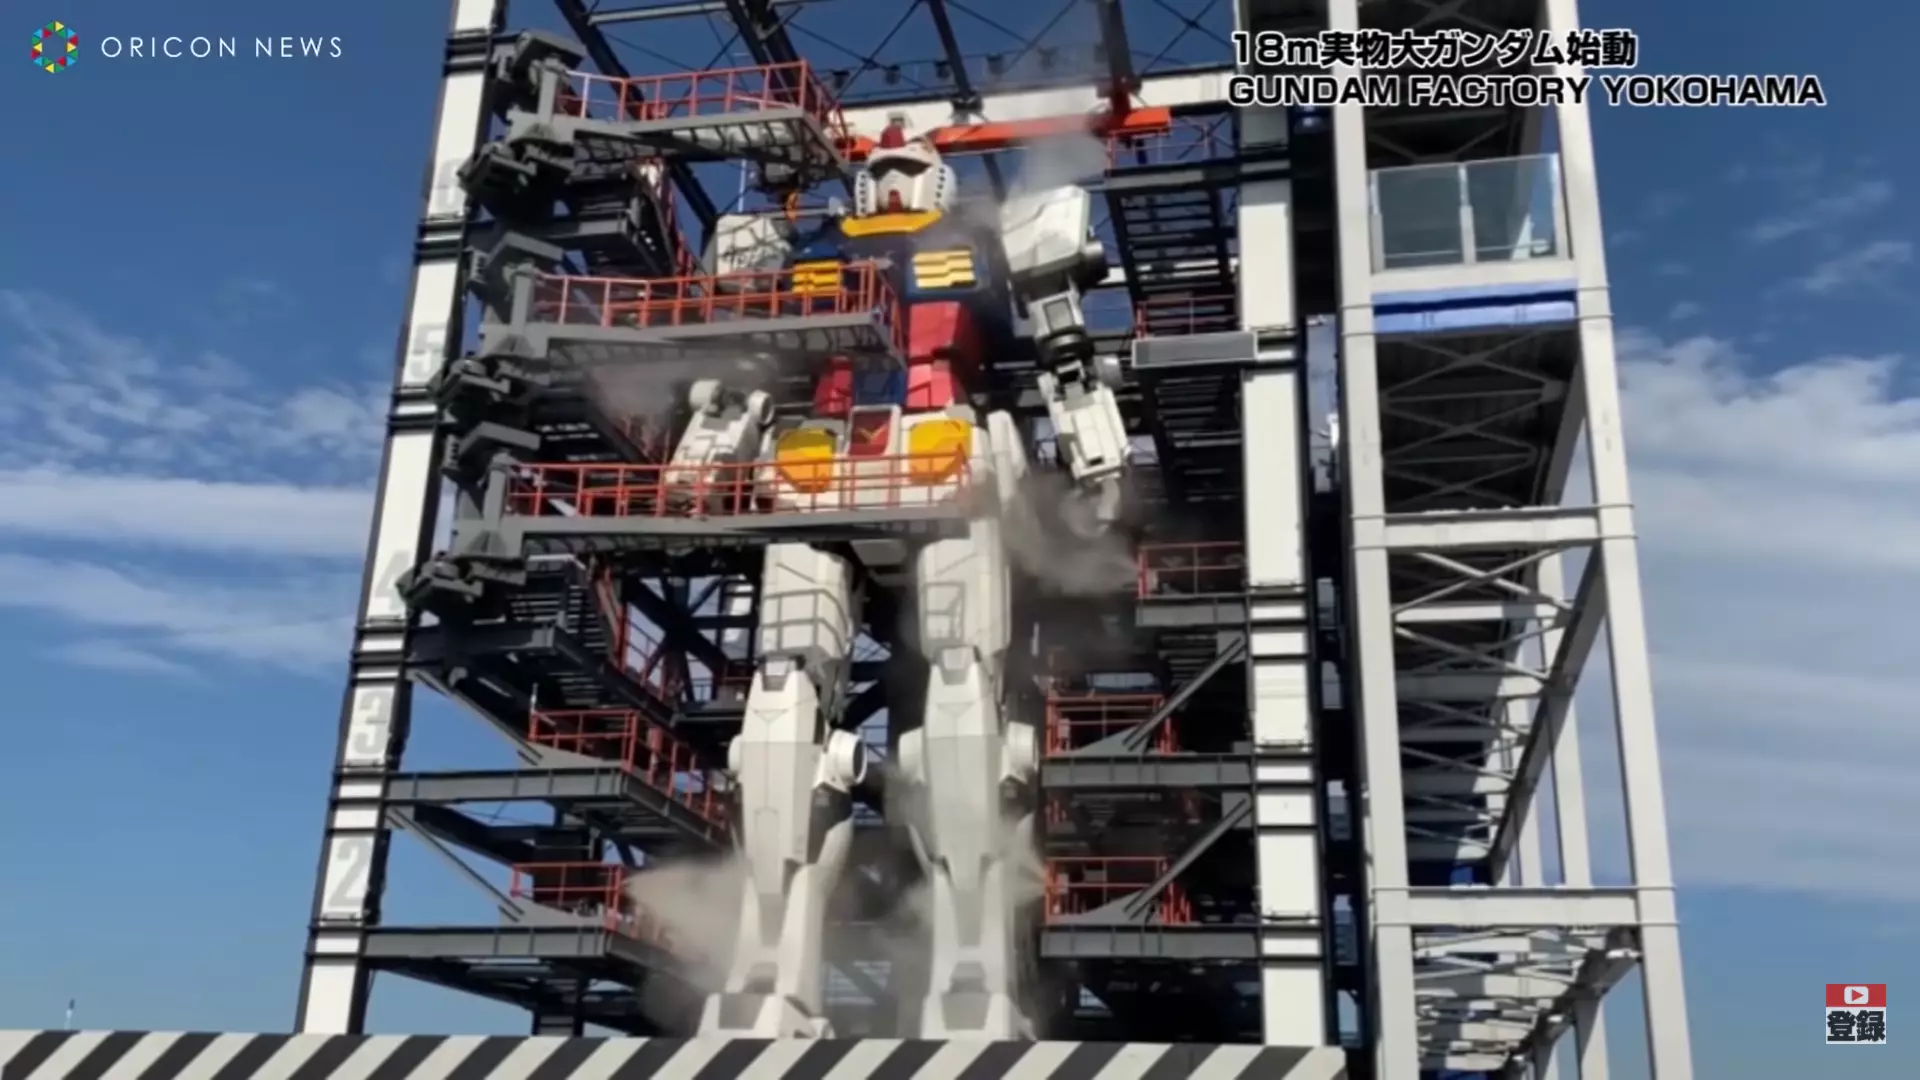 Gigantic Moving Gundam Robot Unveiled In Japan